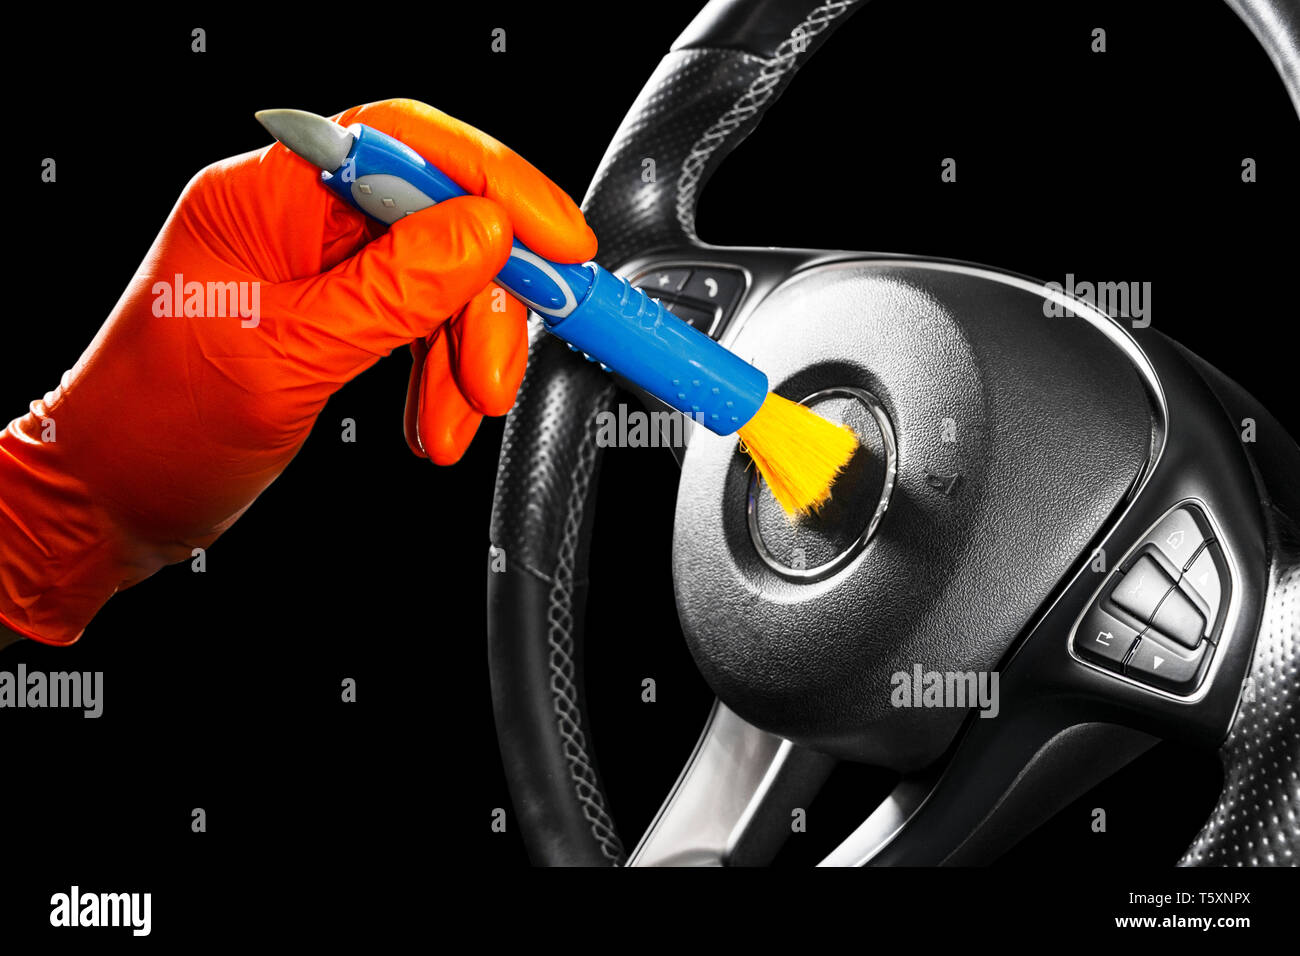 https://c8.alamy.com/compde/t5xnpx/ein-mann-reinigung-auto-lenkrad-mit-der-burste-von-autoteilen-oder-aufbereitung-konzept-selektive-konzentrieren-von-autoteilen-reinigung-mit-schwamm-arbeitnehmer-reinigung-t5xnpx.jpg